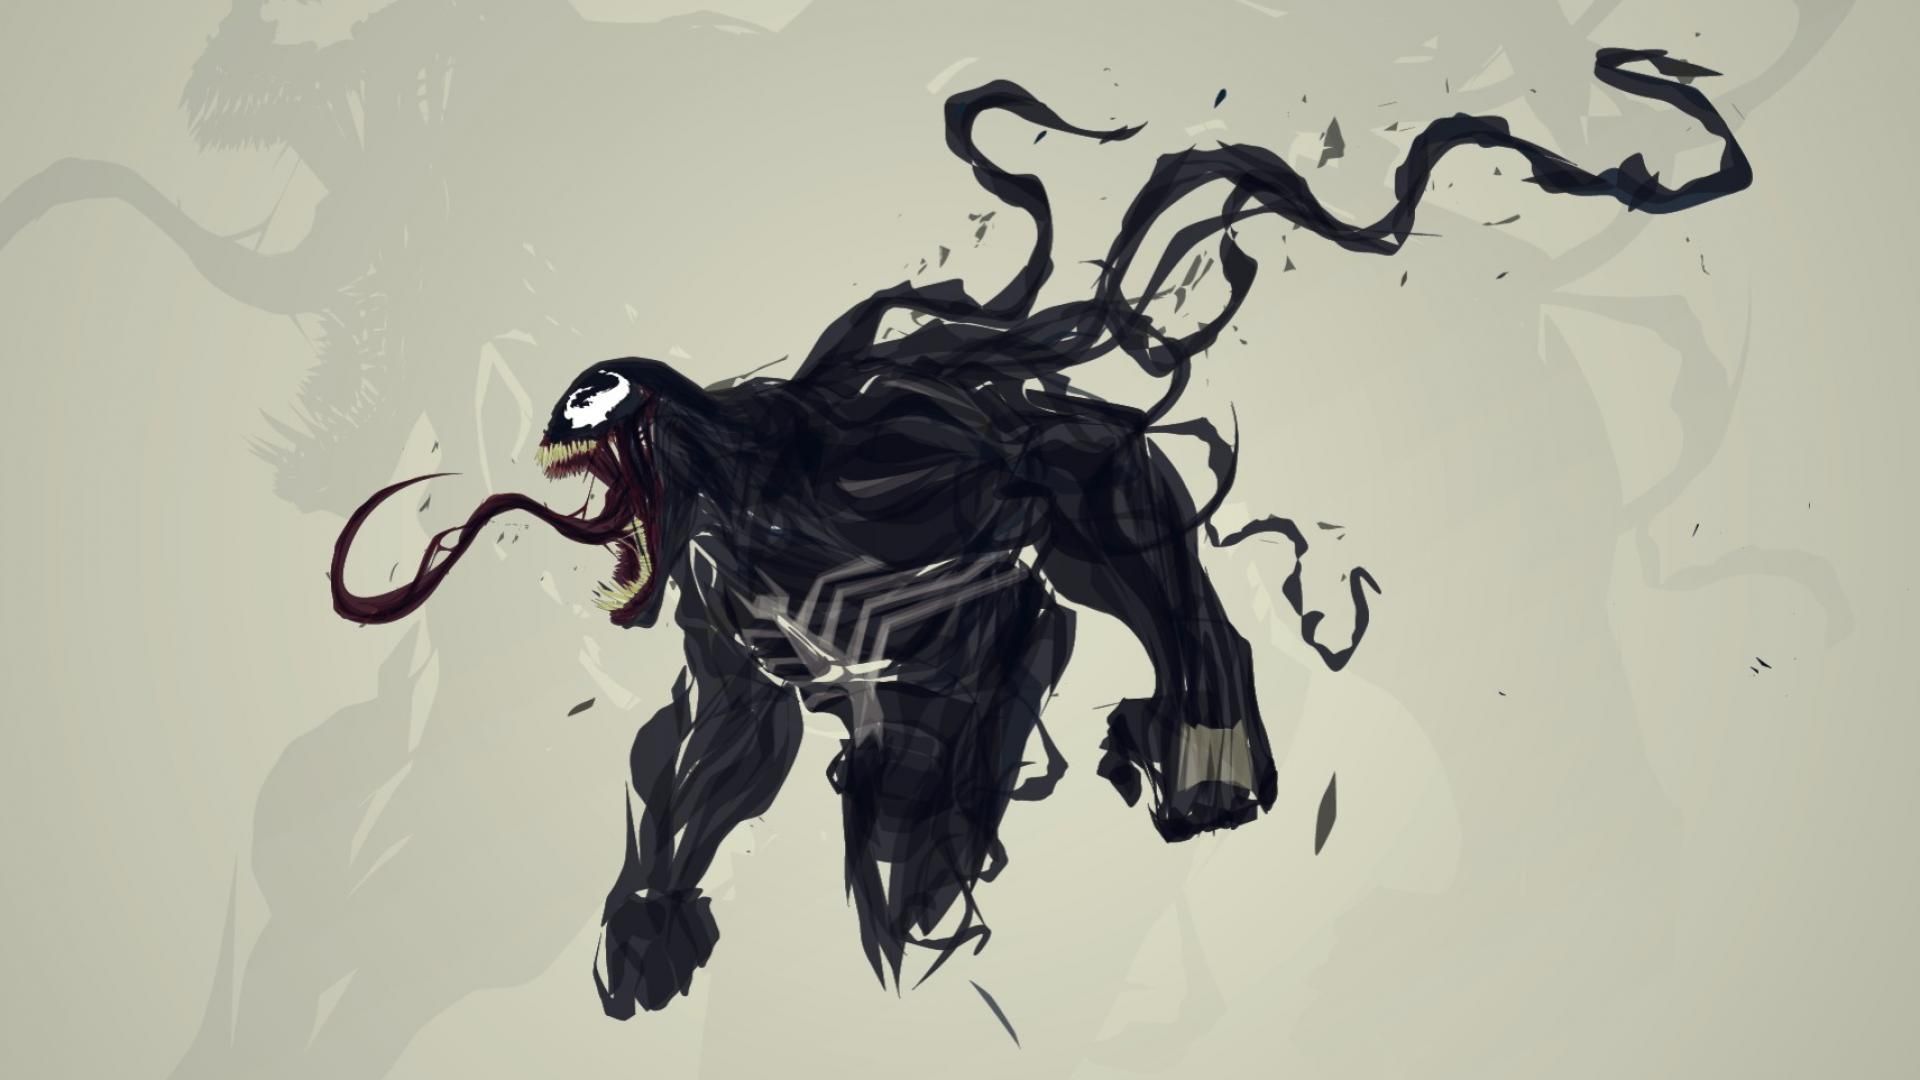 Marvel Venom Wallpaper Free Marvel Venom Background